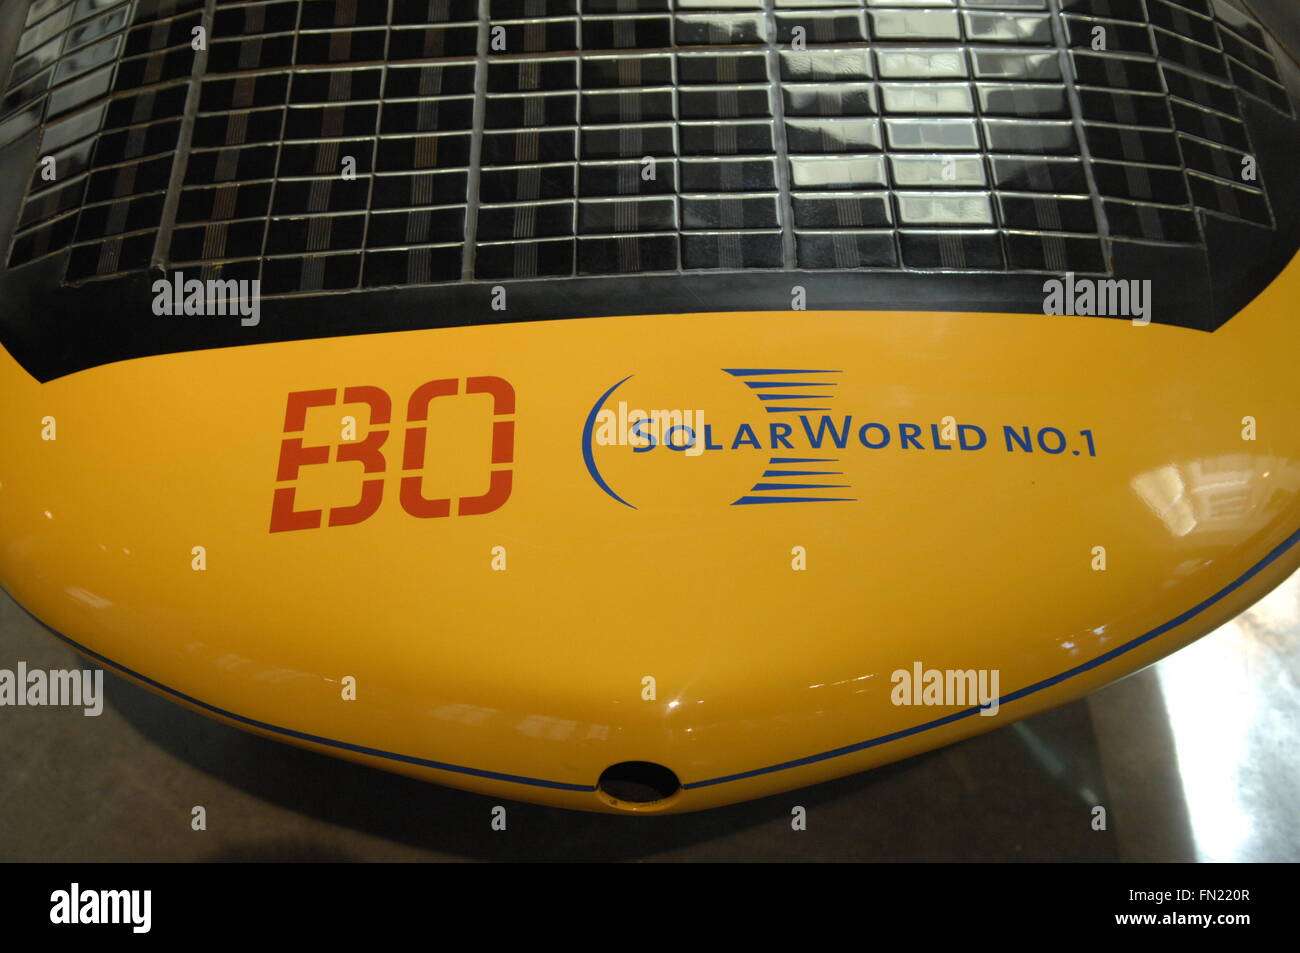 Solar car(spaceship) 2007, ist es identisch mit die solare Welt ein, gewann den Preis für das schönste Solarauto der Welt Stockfoto